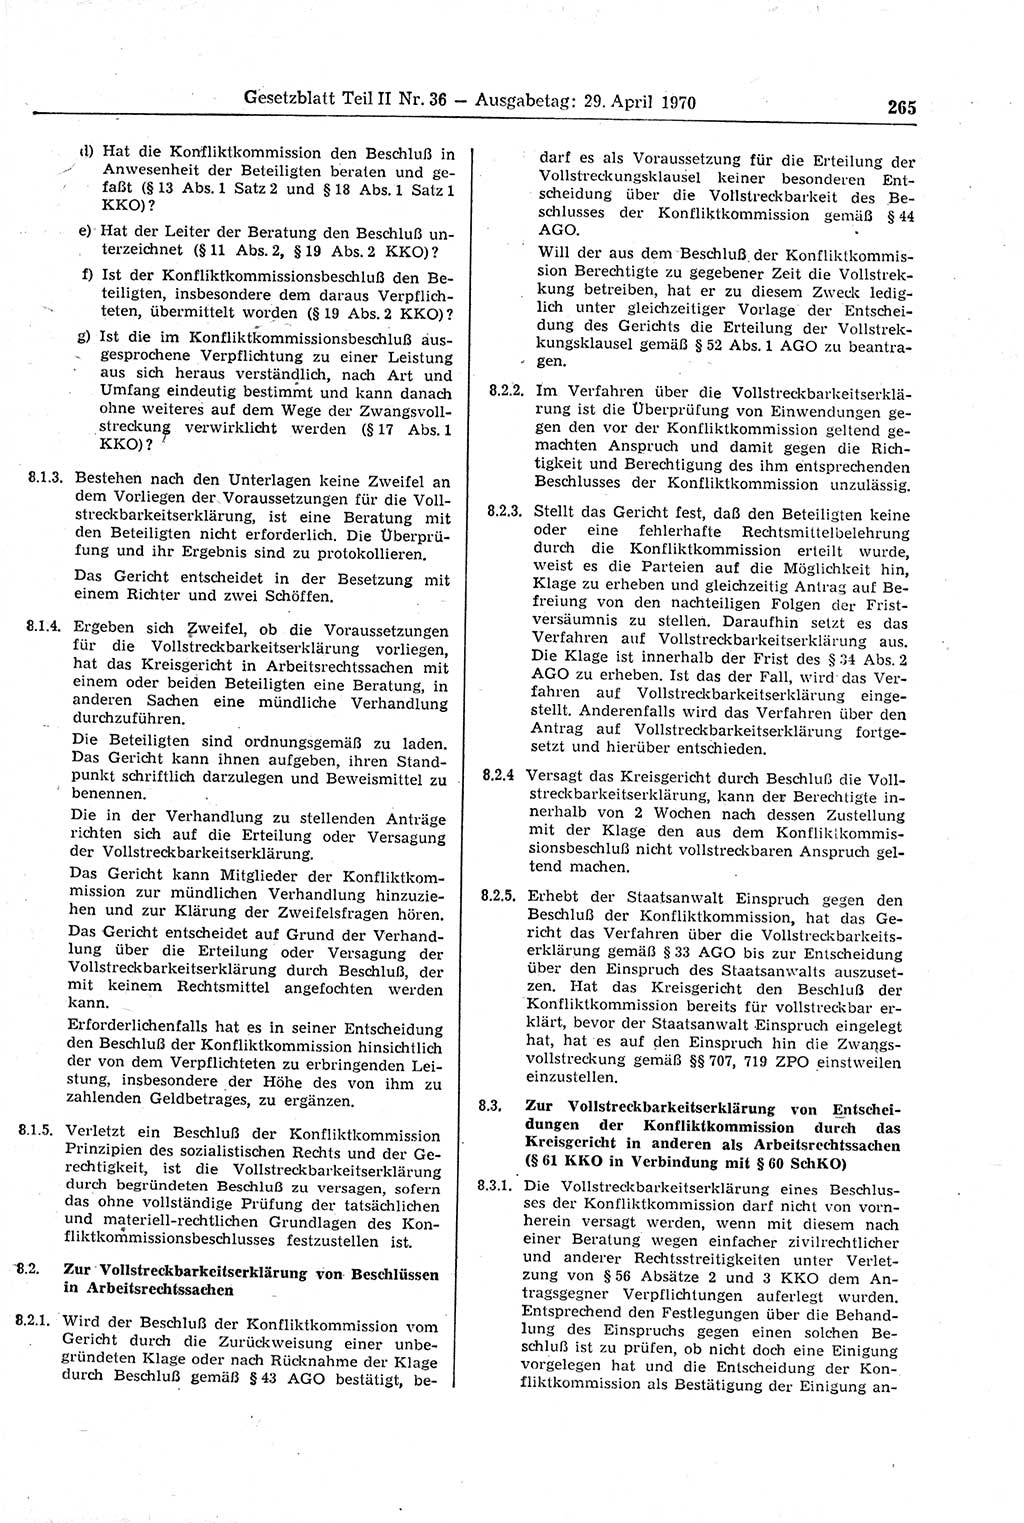 Gesetzblatt (GBl.) der Deutschen Demokratischen Republik (DDR) Teil ⅠⅠ 1970, Seite 265 (GBl. DDR ⅠⅠ 1970, S. 265)